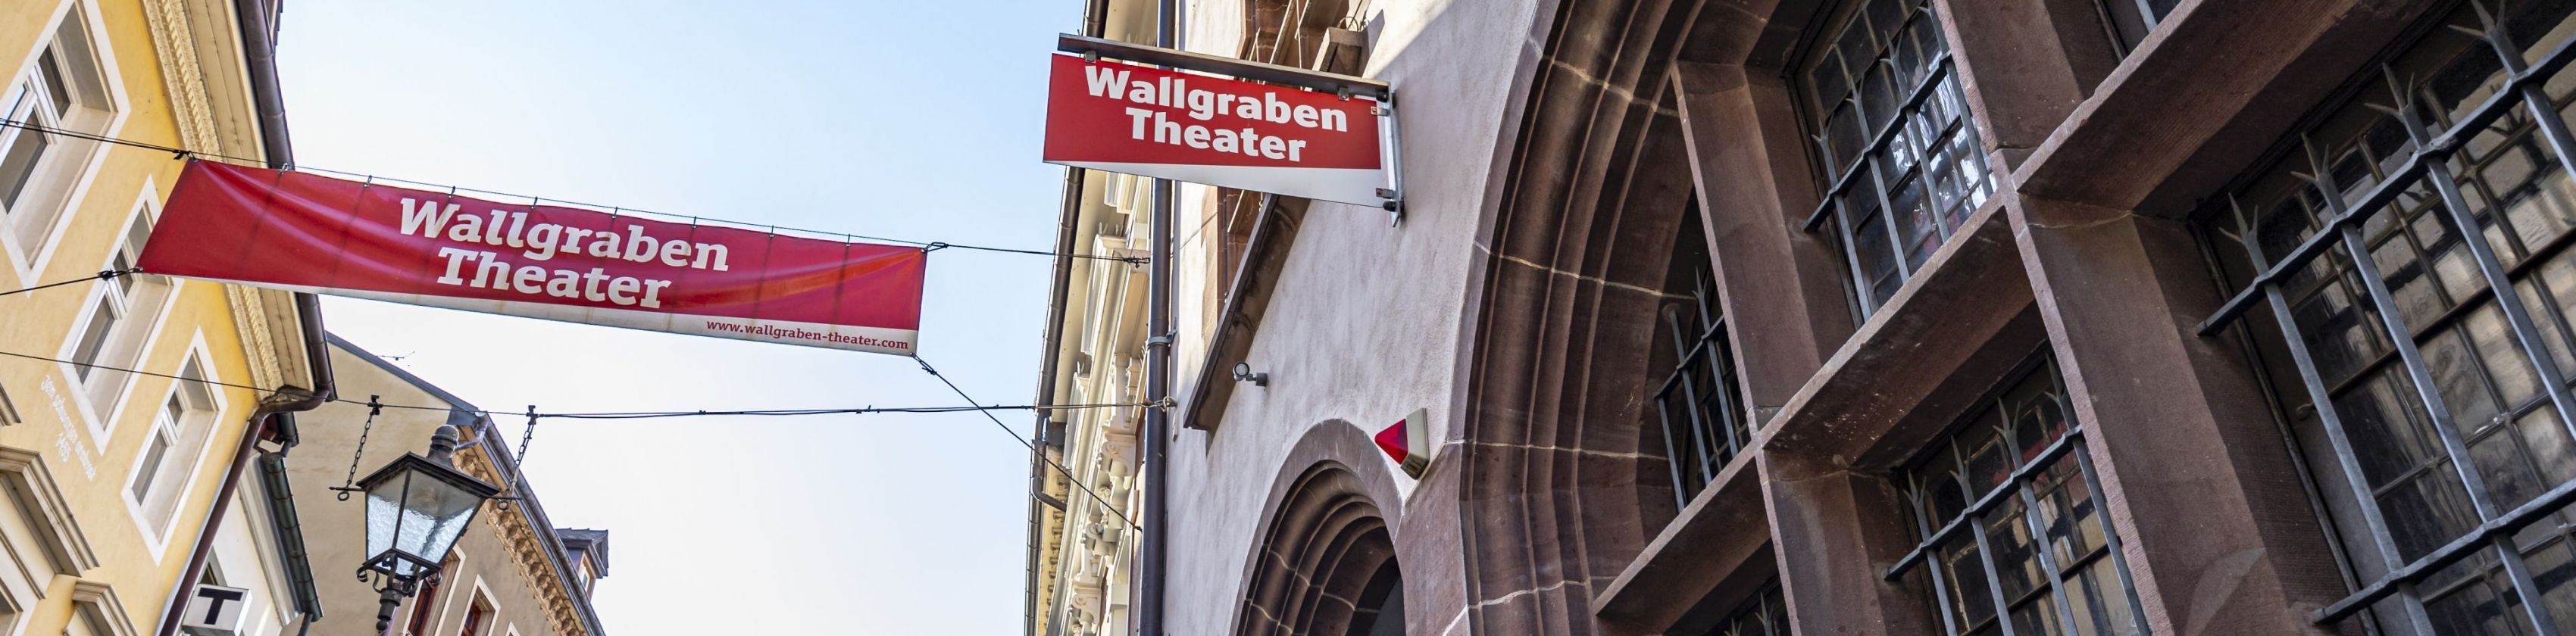 Wallgraben-Theater-FWTM-Spiegelhalter.10